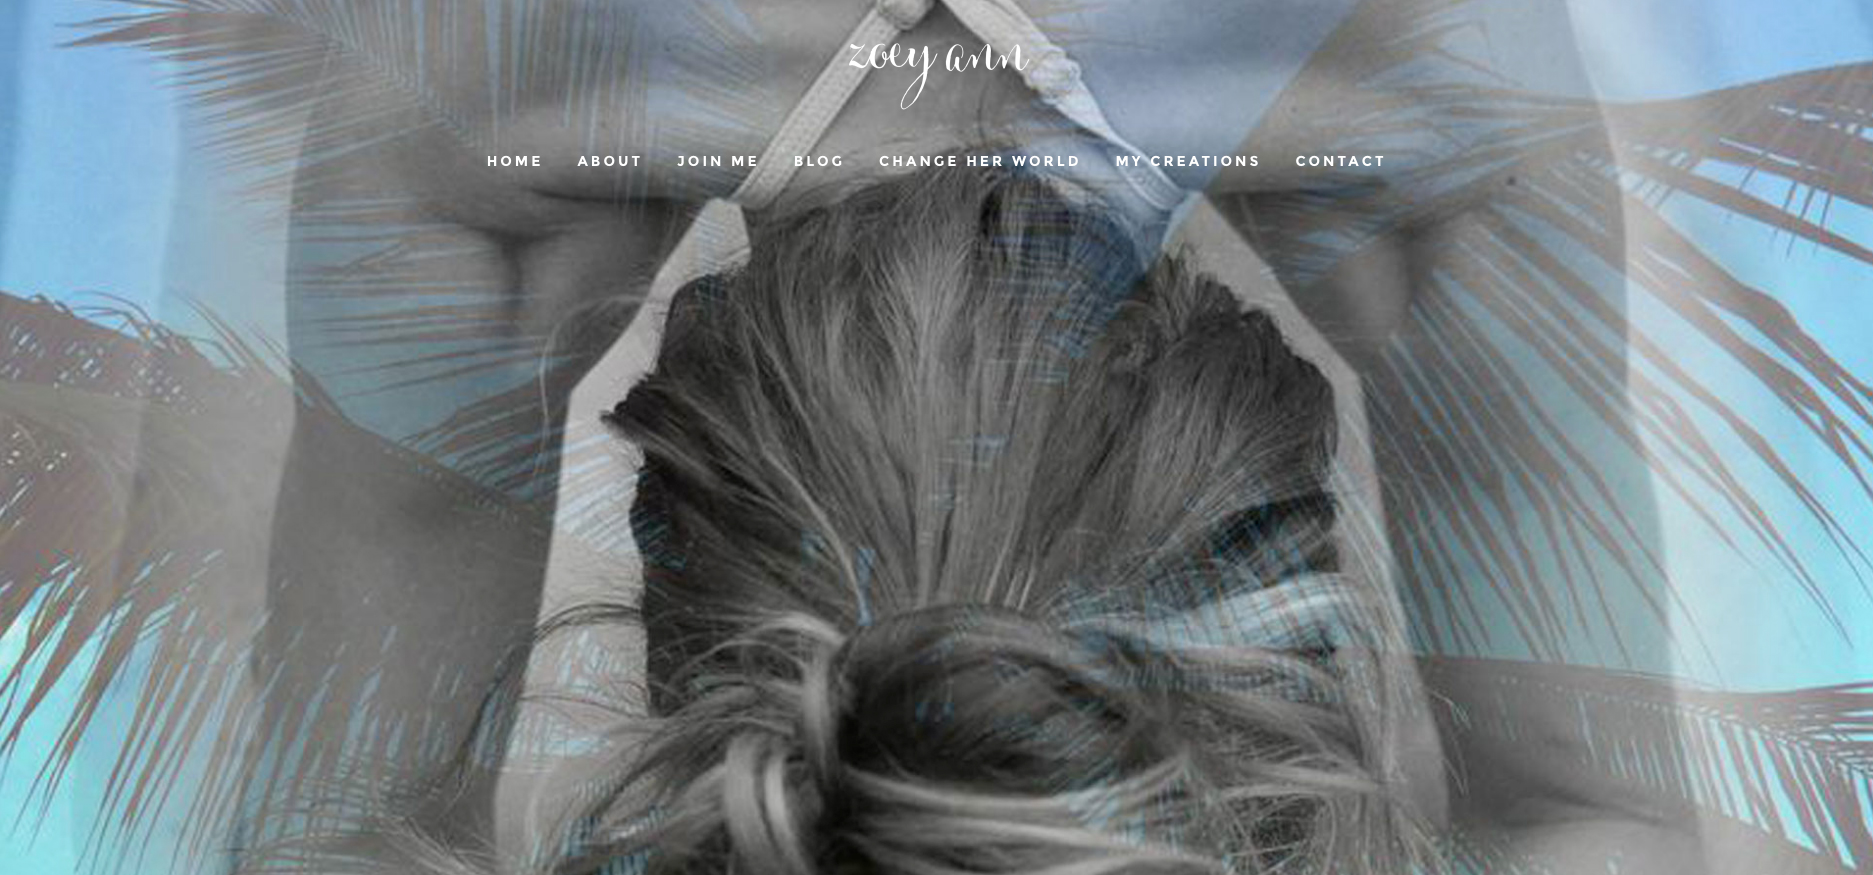 Website design by Sea Salt Web Whistler for Zoey Ann yoga